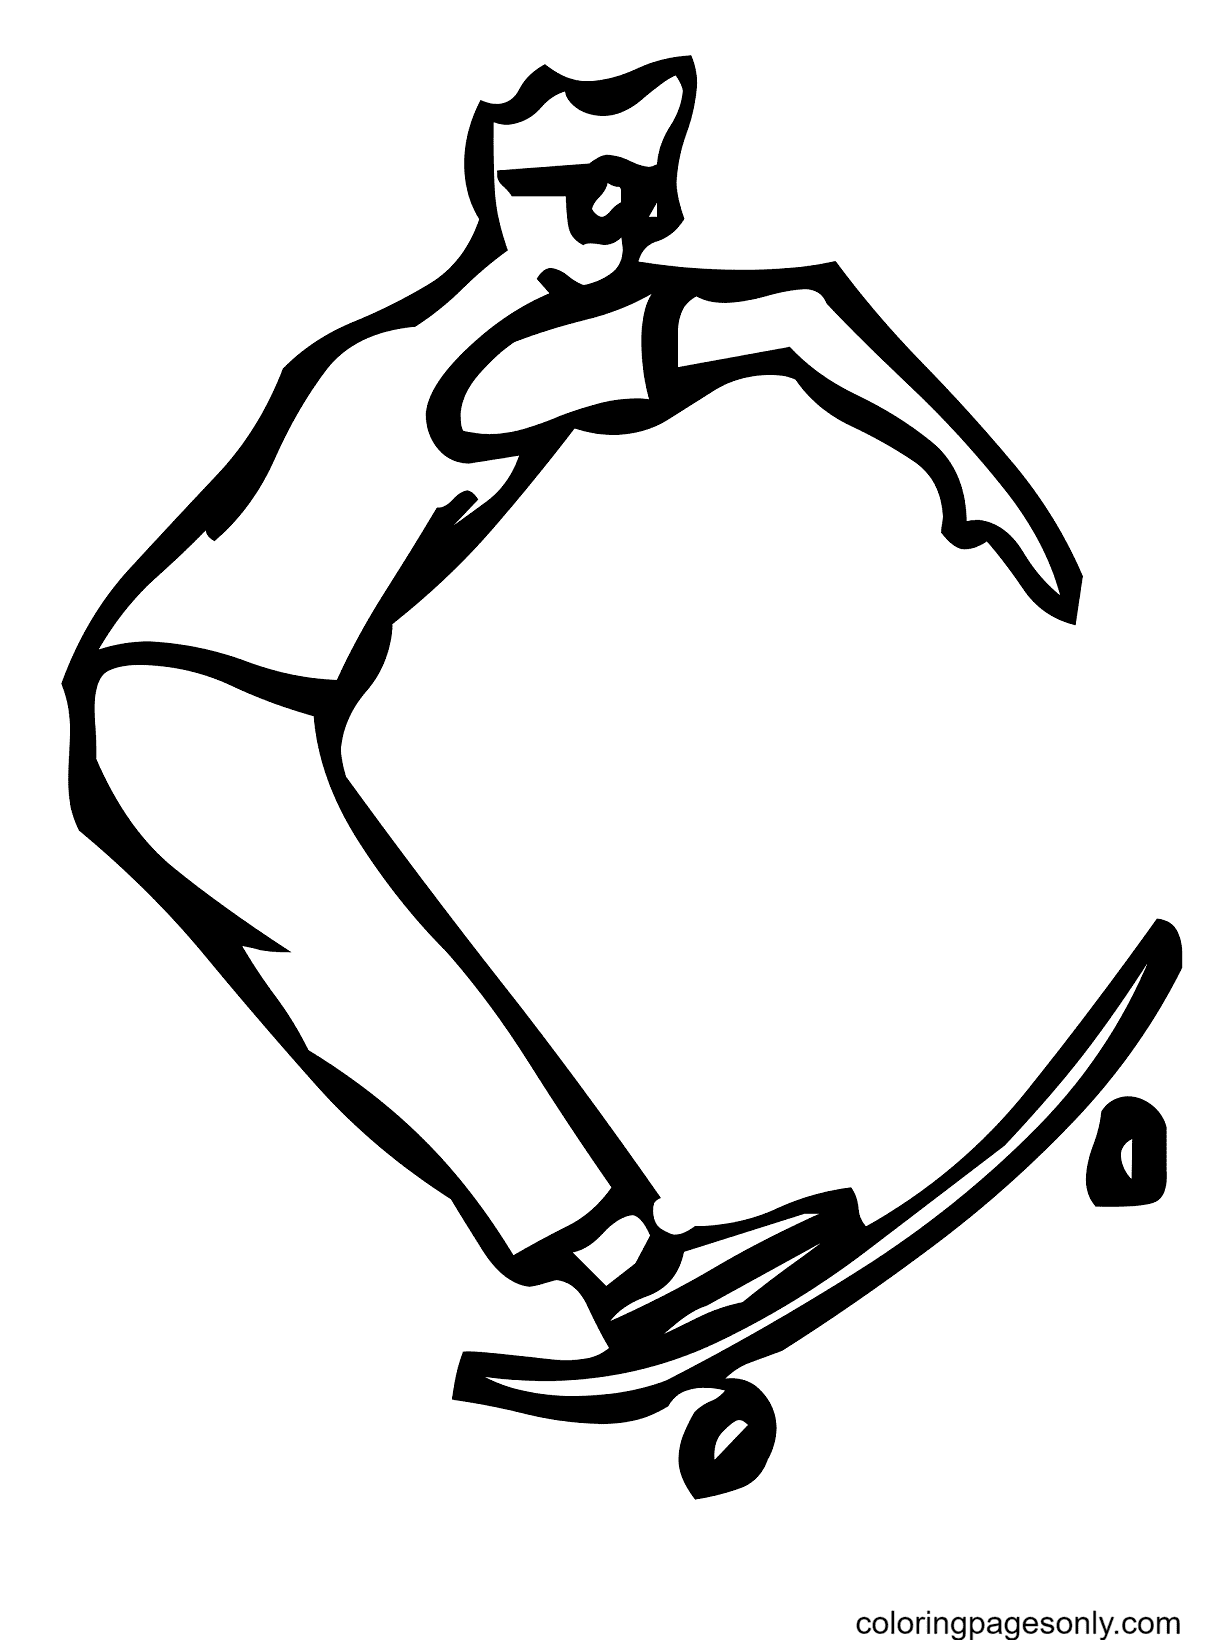 Skateboard-Buchstabe C aus Buchstabe C